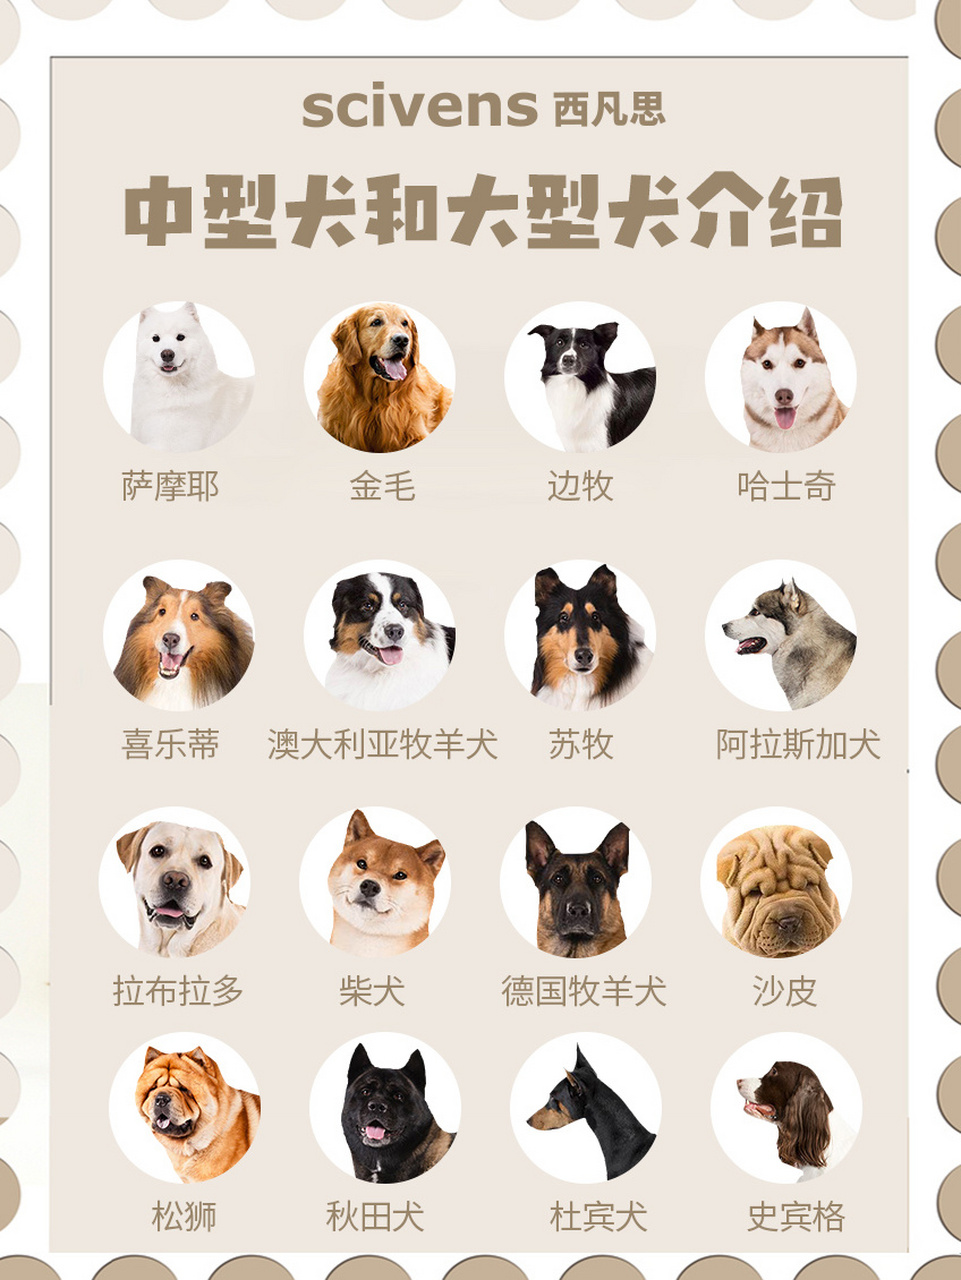 中型犬品种大全 排名图片